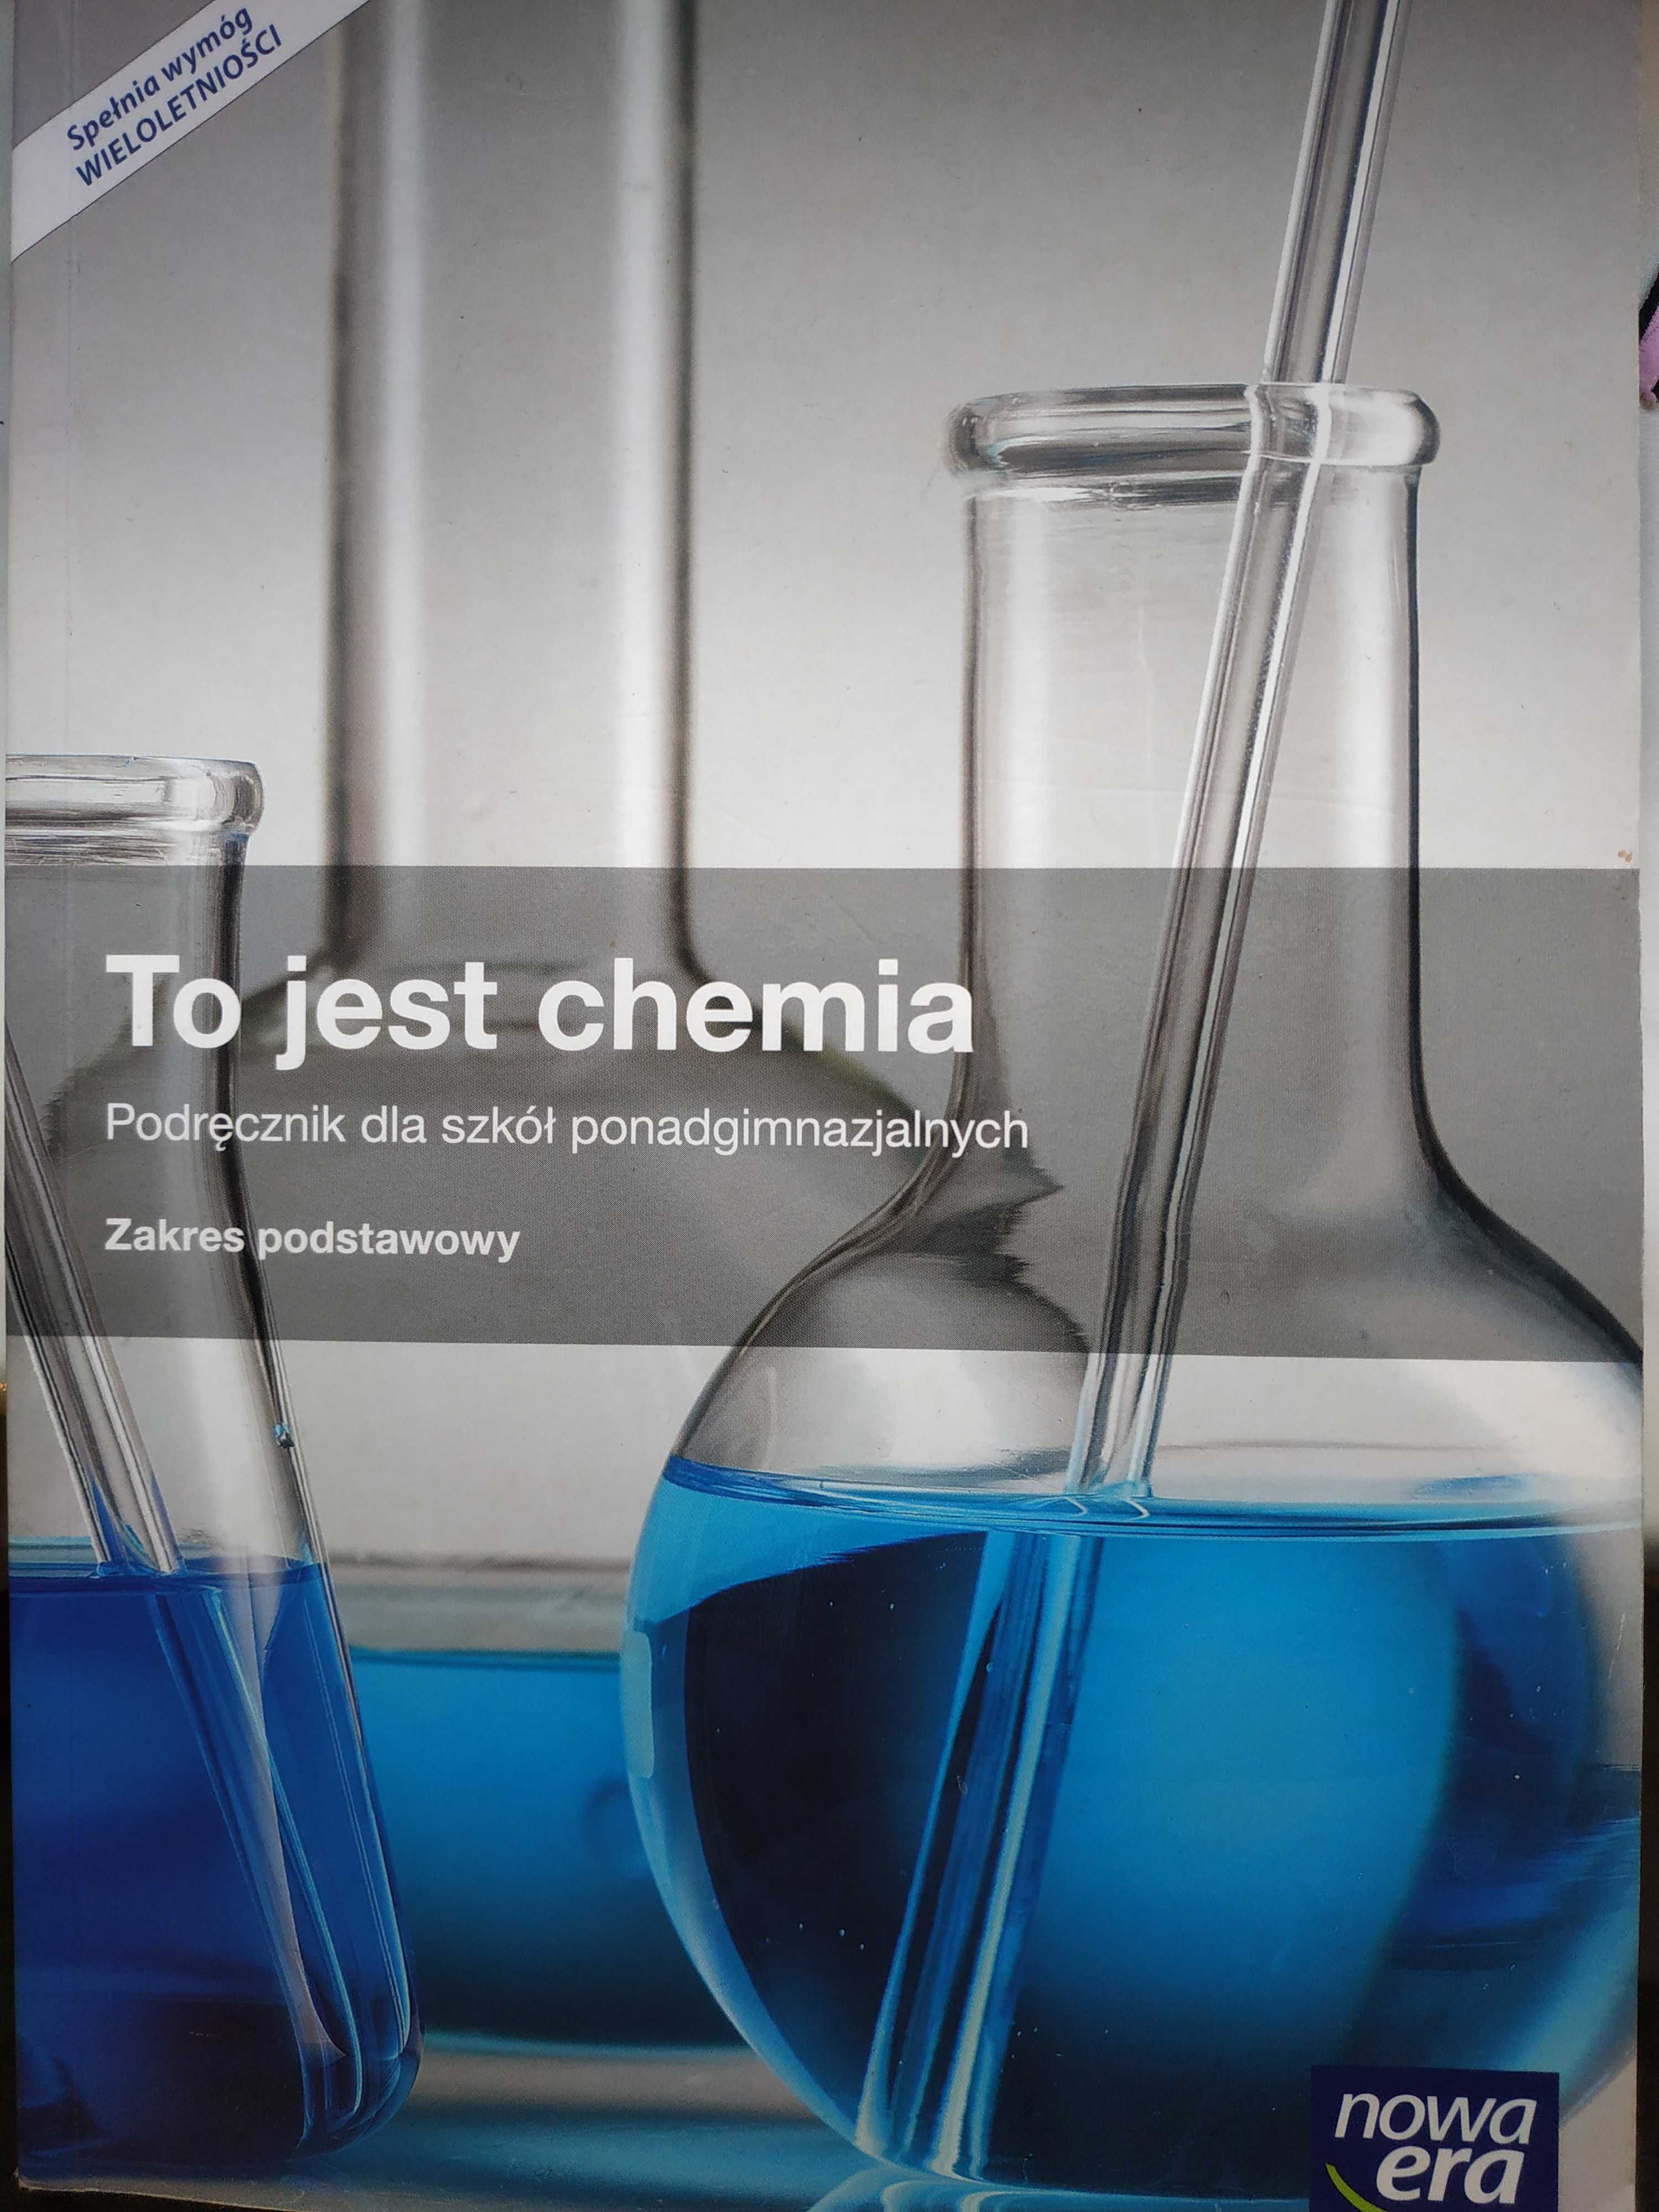 Podręcznik "To jest chemia"